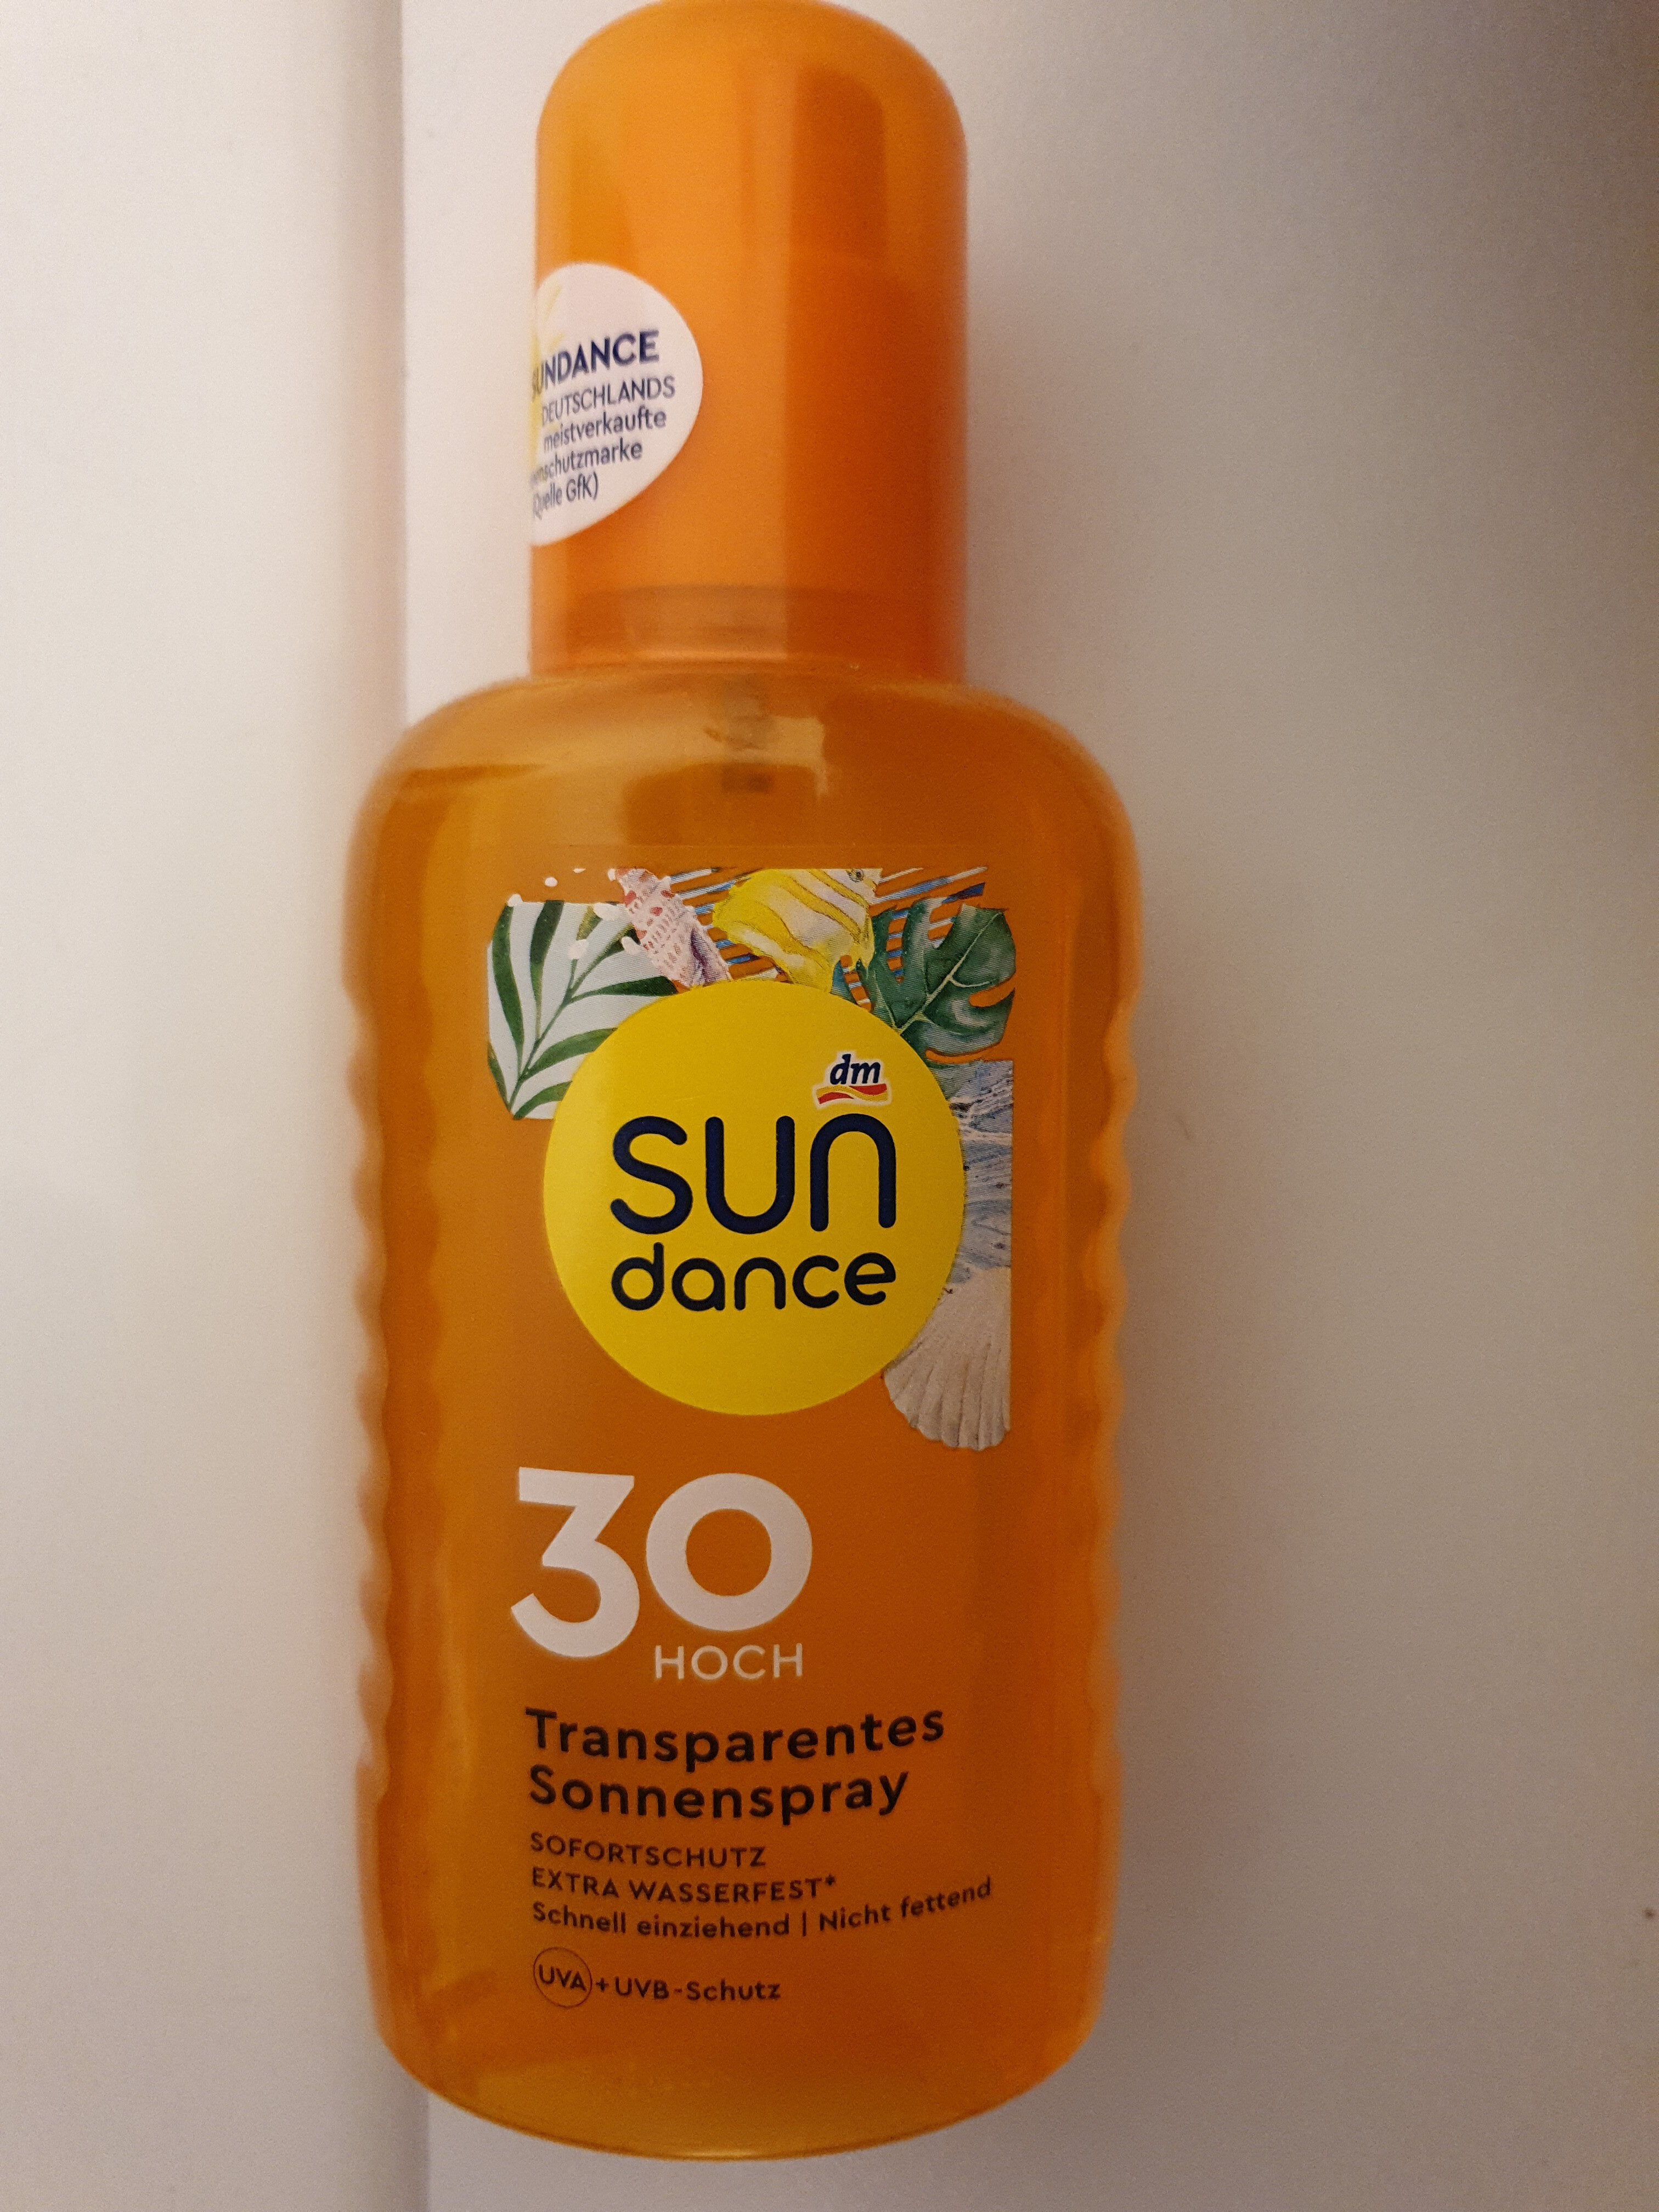 sun dance 30 transparentes sonnenspray - Produto - de